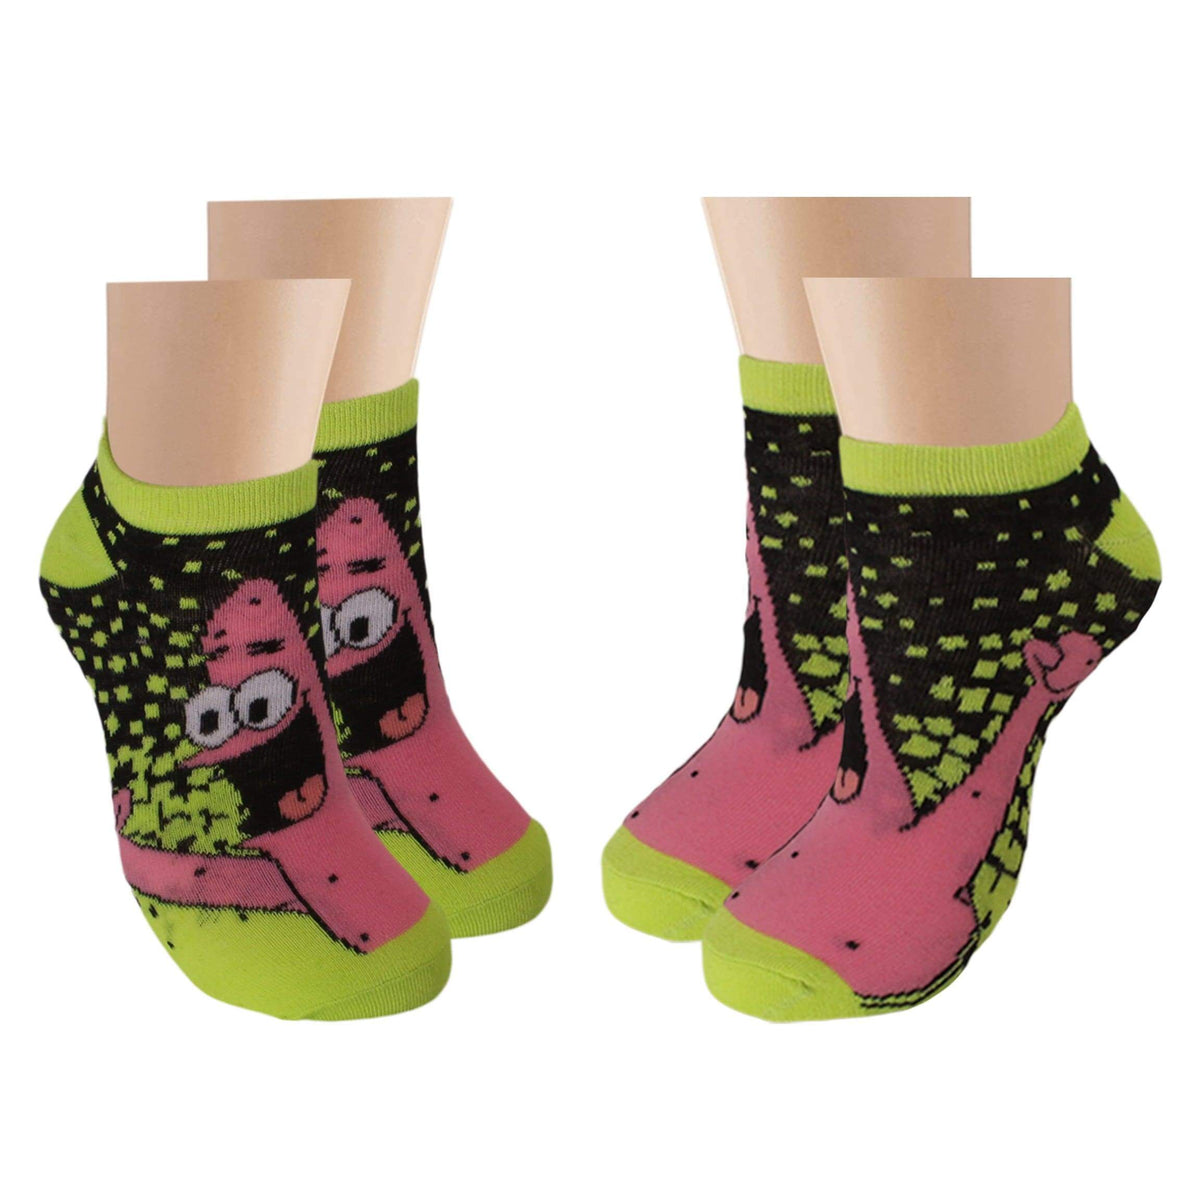 Spongebob 6 Pack Ankle Socks Black